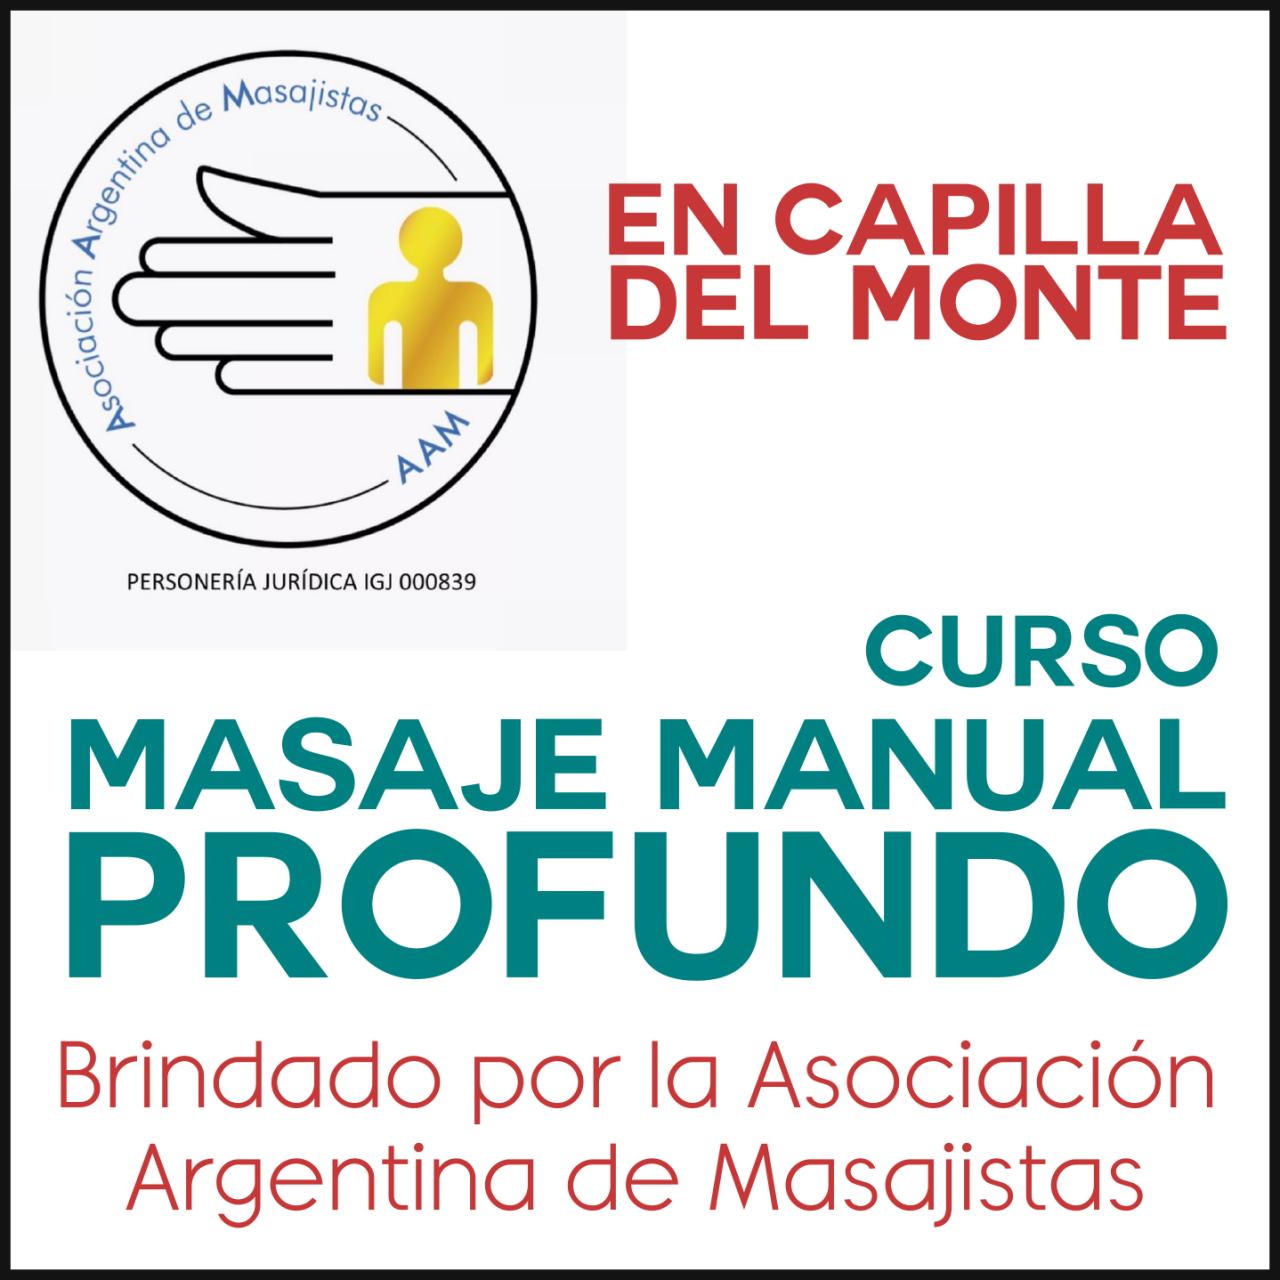 Masaje manual profundo: La Asociación Argentina llega a Capilla del Monte